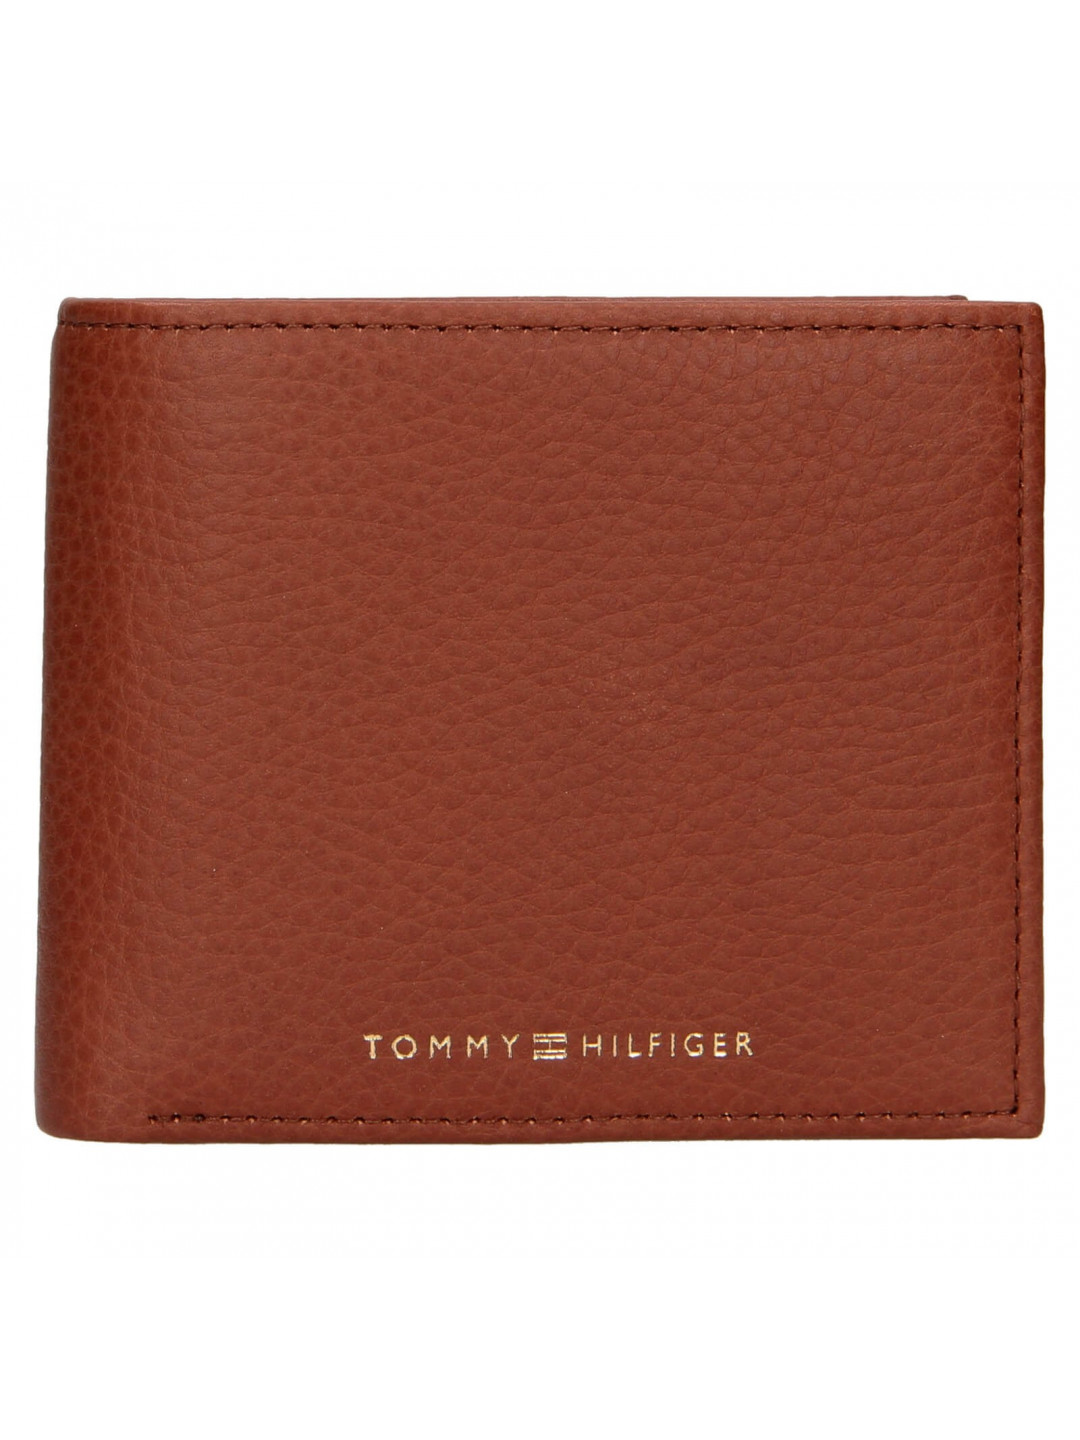 Pánská kožená peněženka Tommy Hilfiger Almen – hnědá